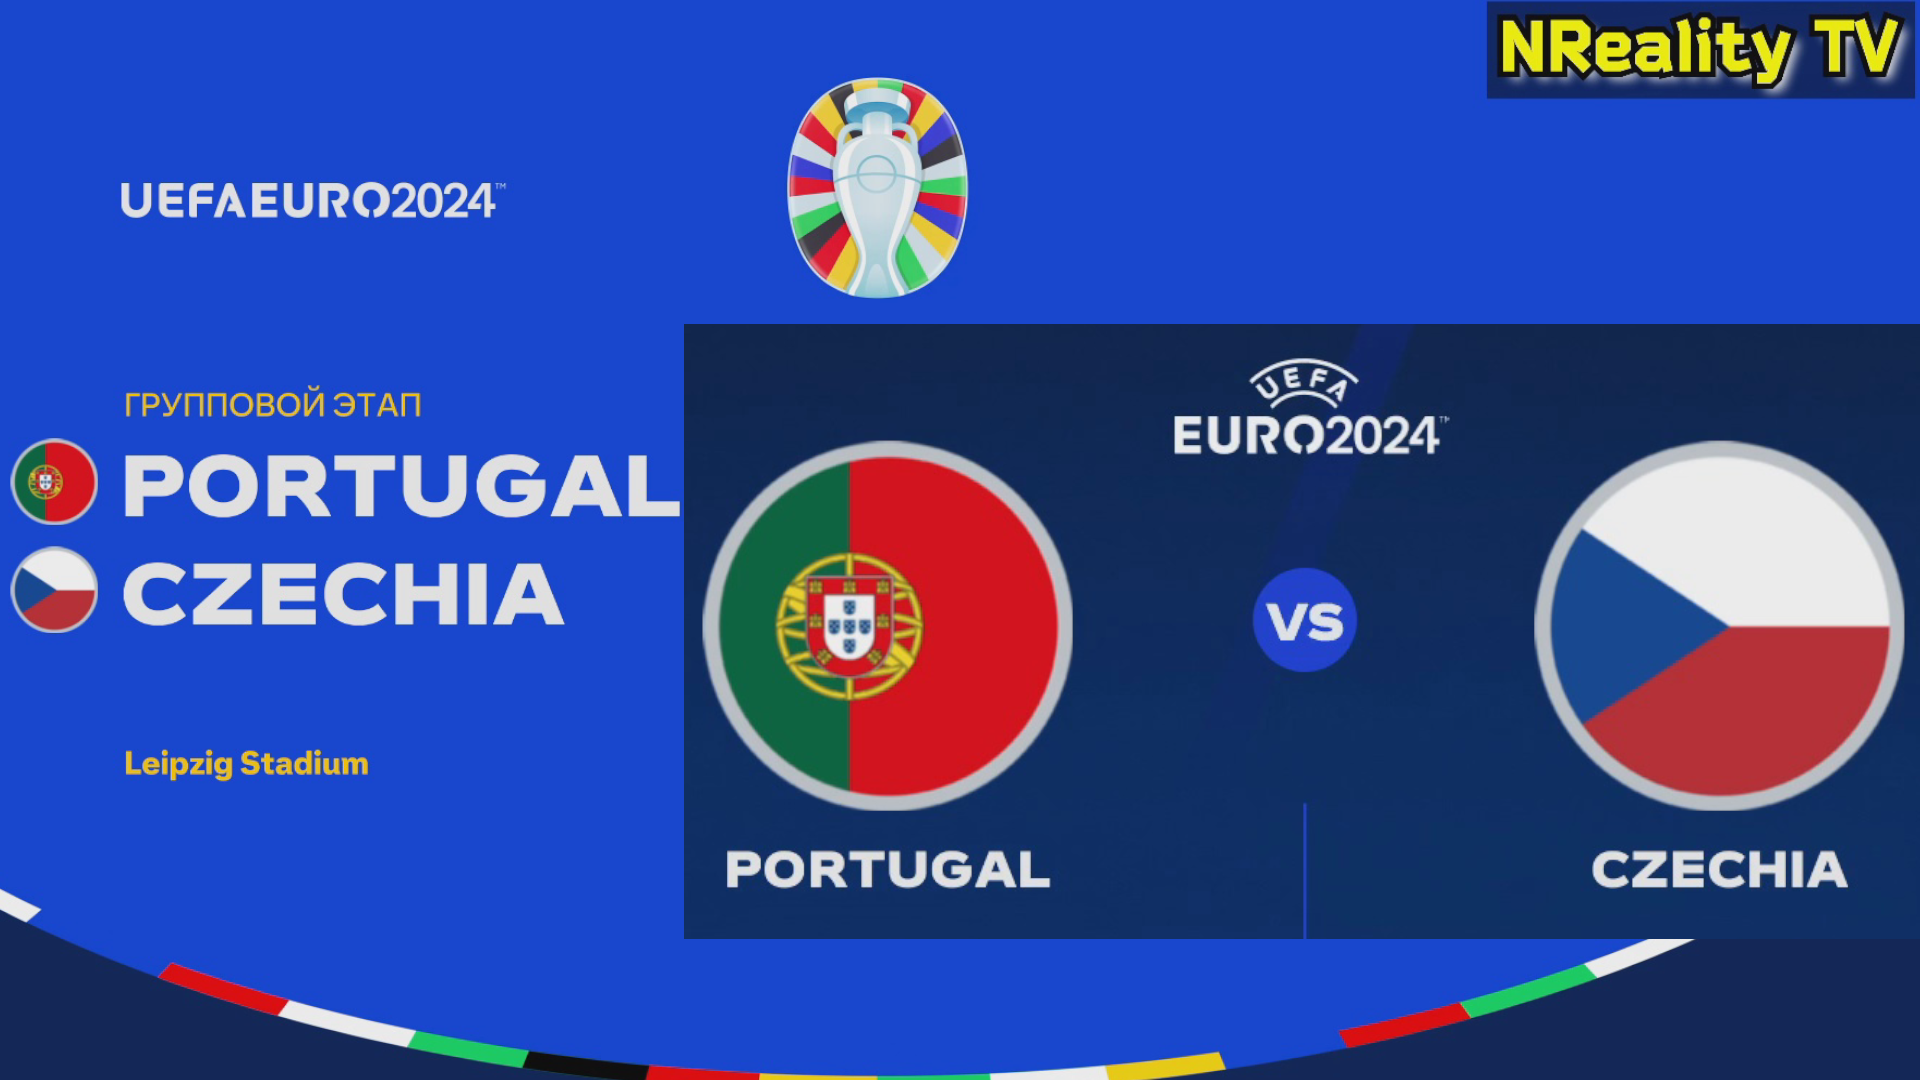 Футбол. Чемпионат Европы-2024. Португалия - Чехия. Групповой этап. EURO 2024. Portugal - Czechia.